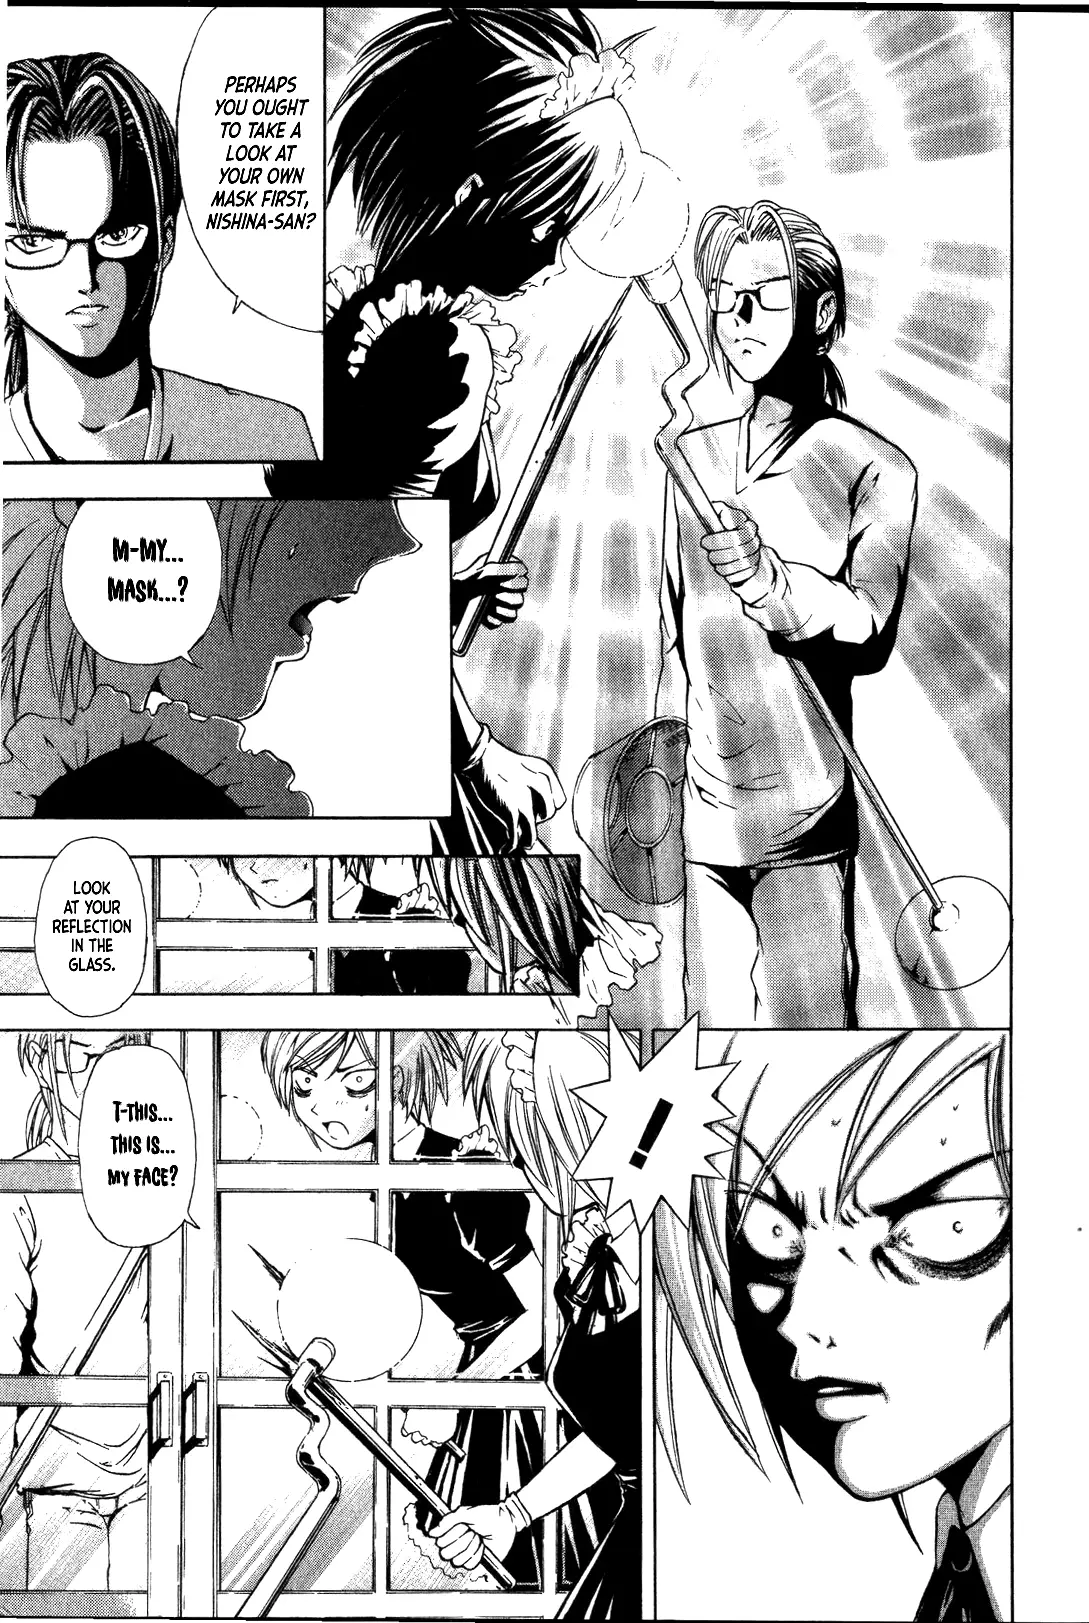 Mystery Minzoku Gakusha Yakumo Itsuki - 28 page 18-ddeabccb